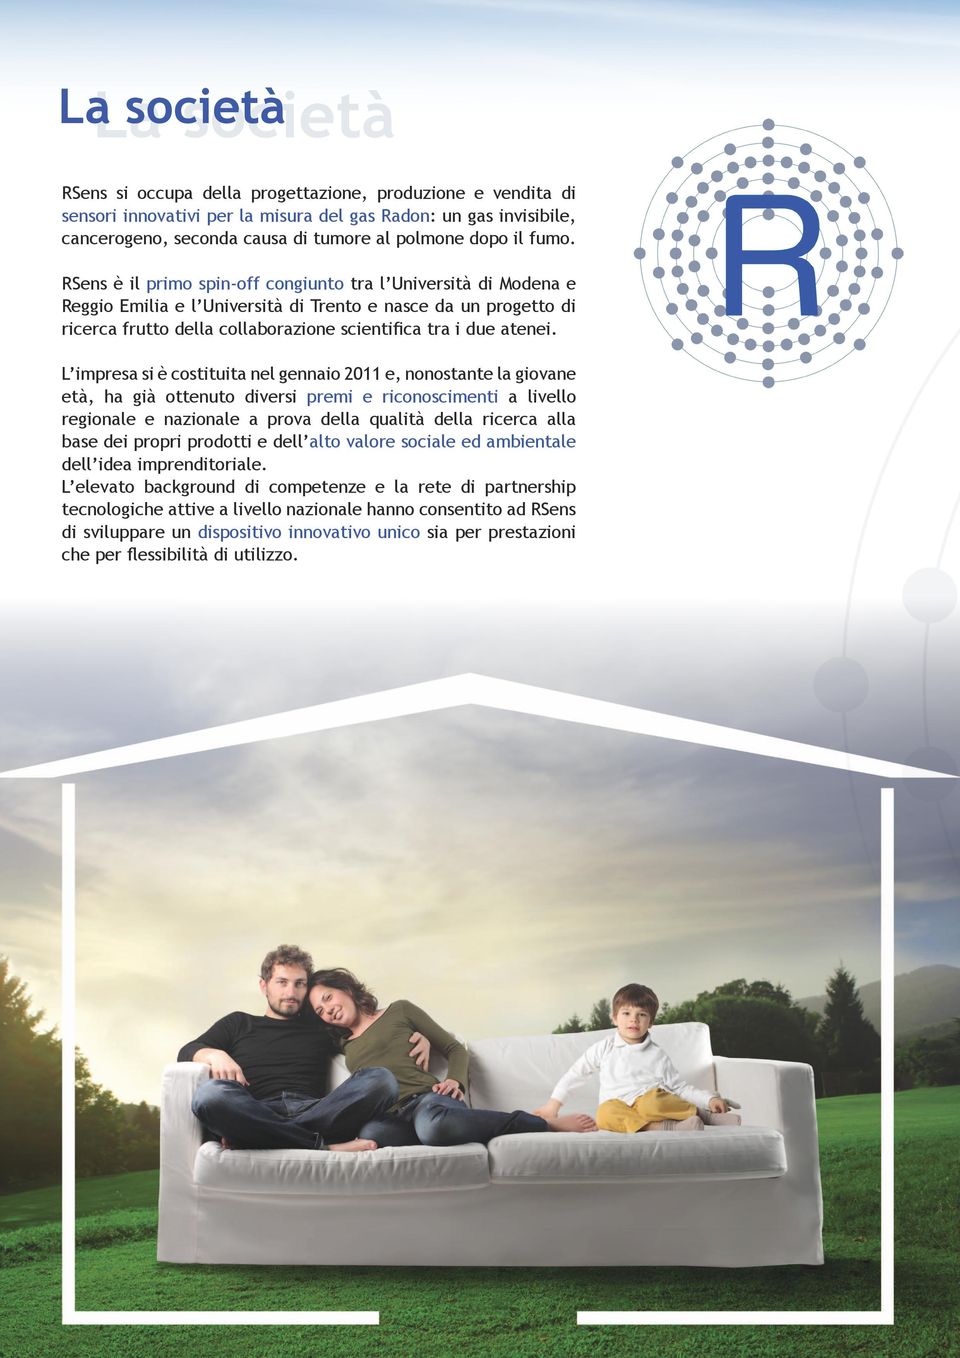 RSens è il primo spin-off congiunto tra l Università di Modena e Reggio Emilia e l Università di Trento e nasce da un progetto di ricerca frutto della collaborazione scientifica tra i due atenei.